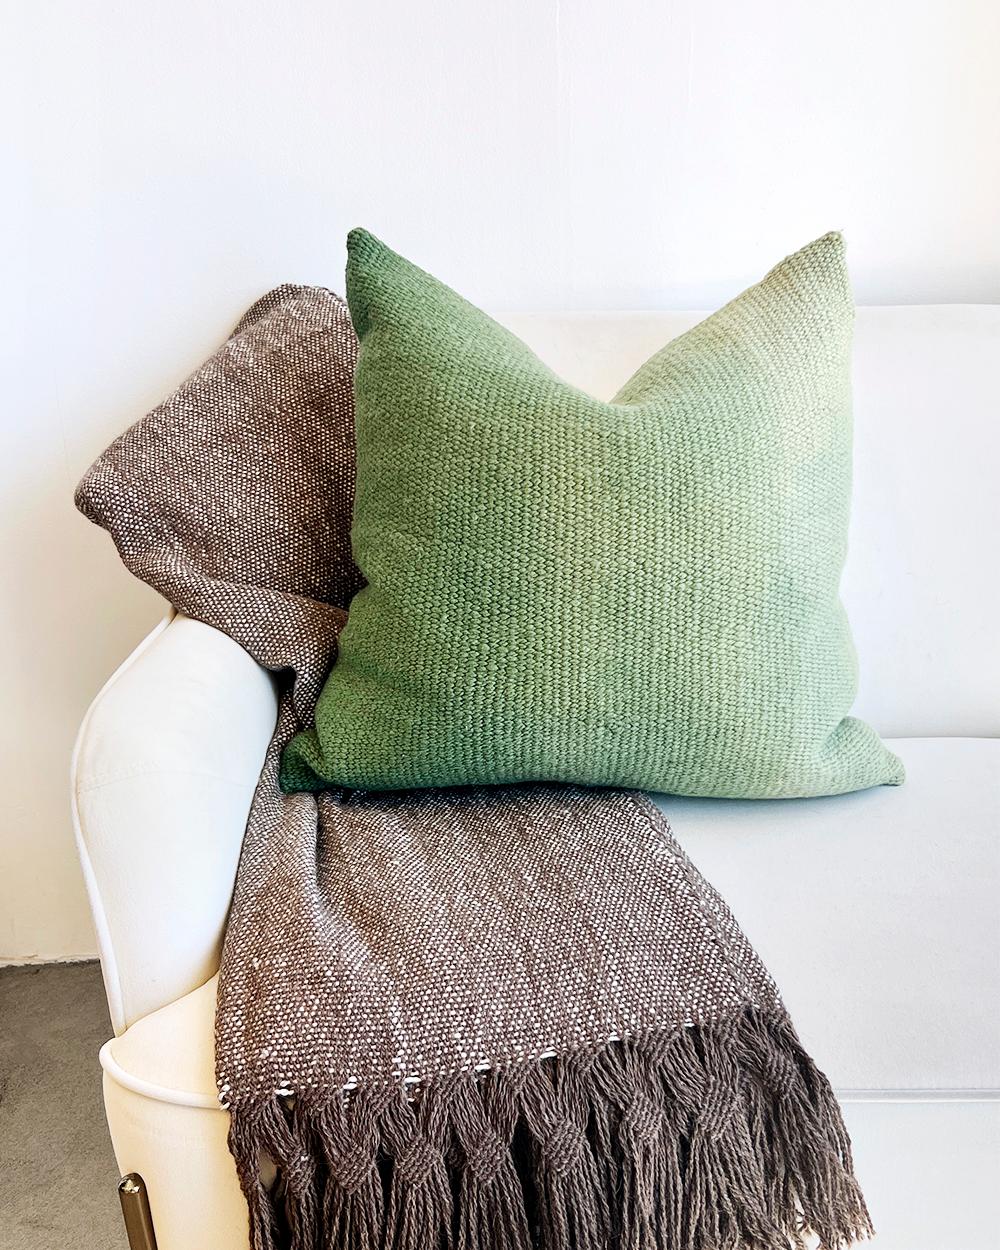 Bringen Sie diesen Herbst etwas Farbe in Ihr Sofa
Das Matiz Green Ombre Throw Pillow ist eine einzigartige Möglichkeit, Ihrer Einrichtung einen organischen, modernen Stil zu verleihen. Der handgewebte Schafwollstoff mit dem Ombre-Effekt wurde mit